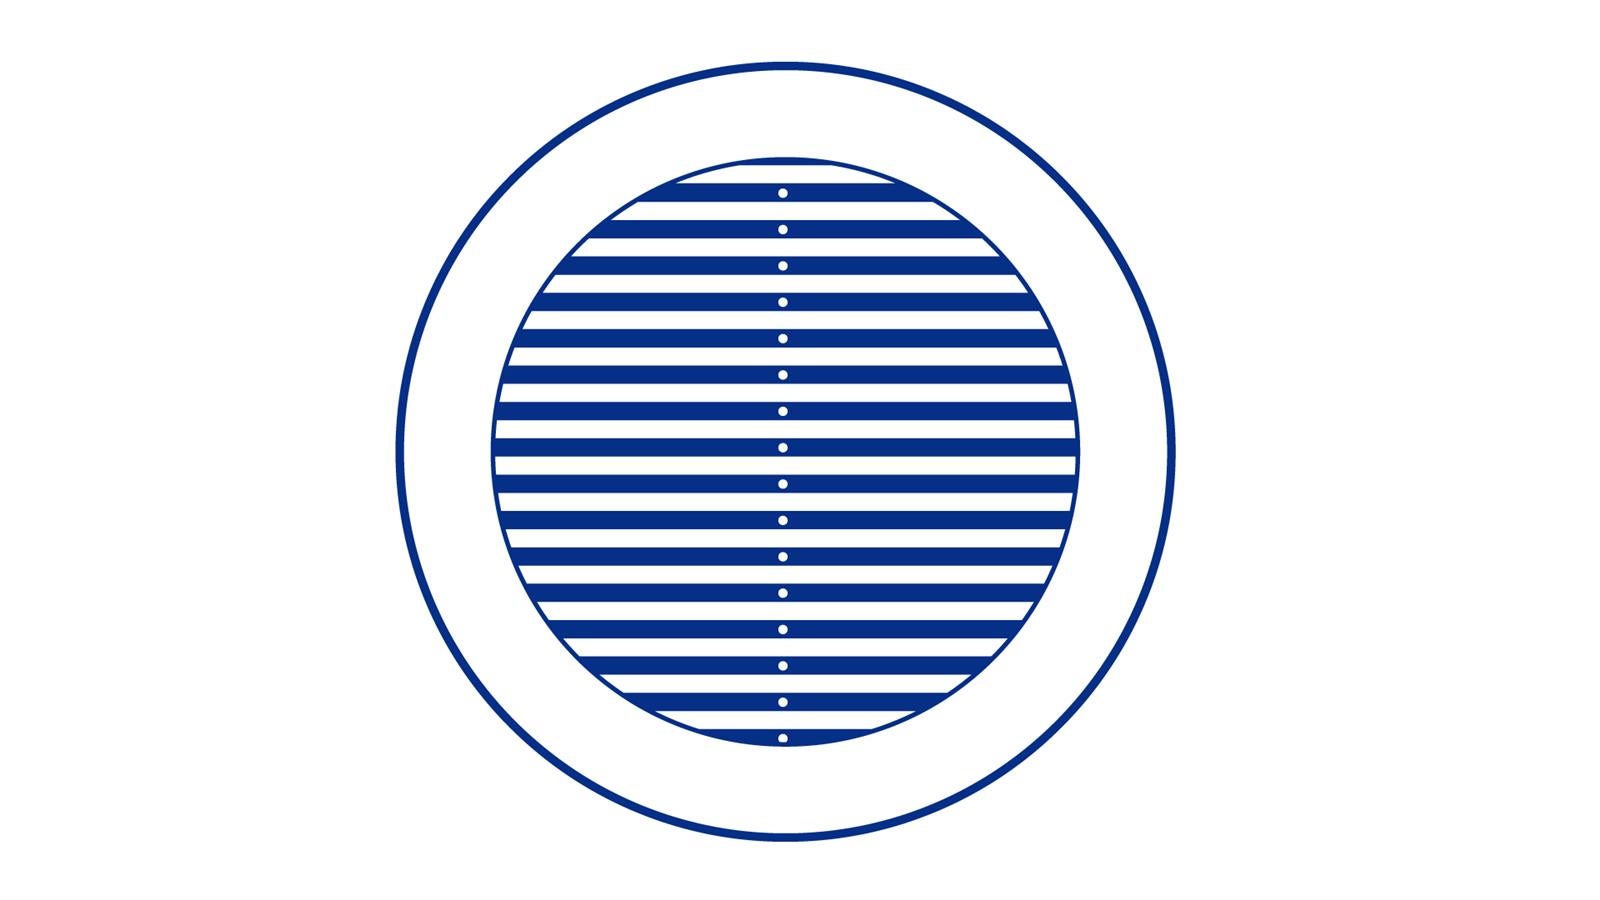 Grille de ventilation ronde avec moustiquaire - Diamètre ext: 135 mm pour  tube 80-100 ❘ Bricoman